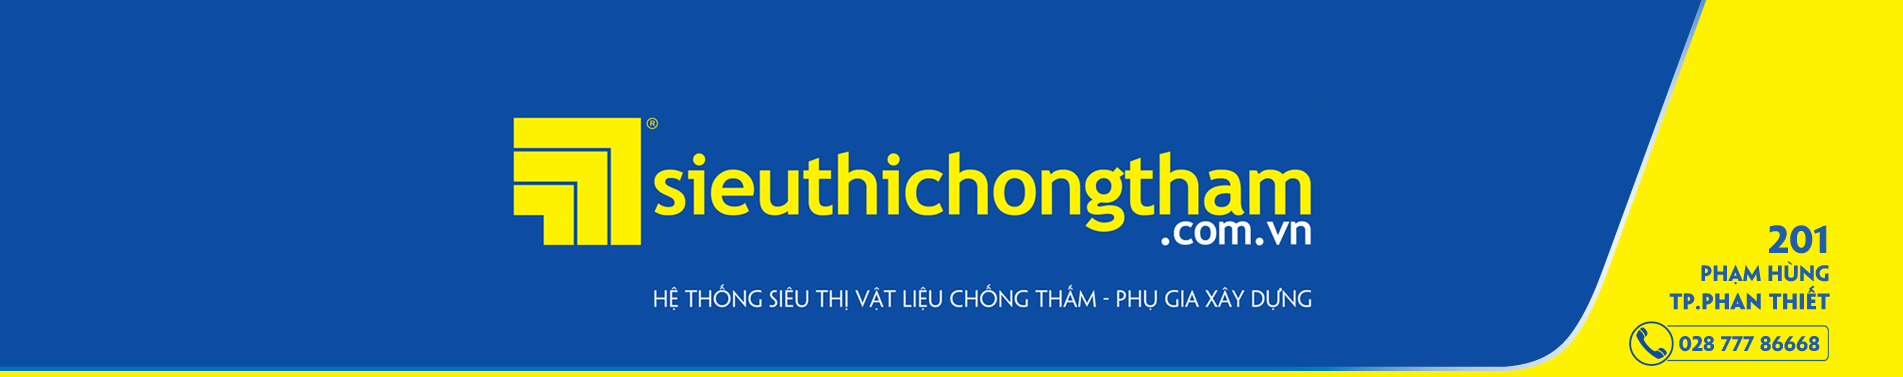 Binh Thuan Banner